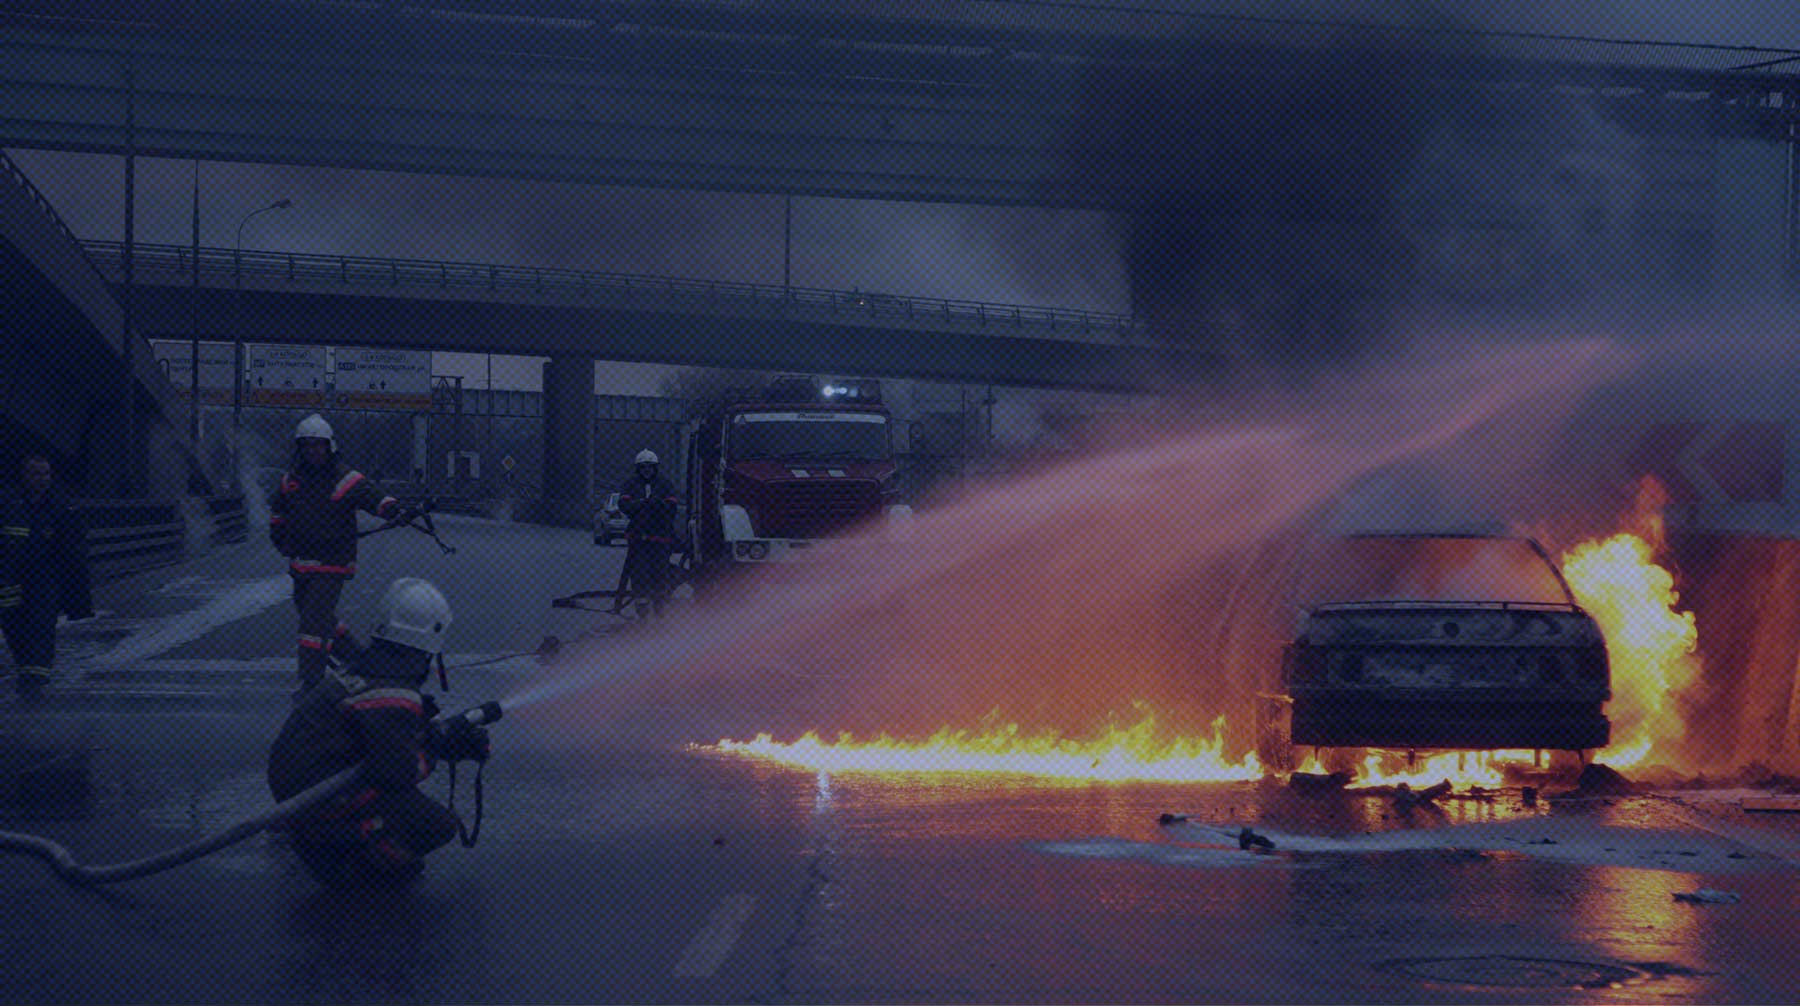 Сгоревшие машины силовиков и отставка правительства. Что происходит в Казахстане